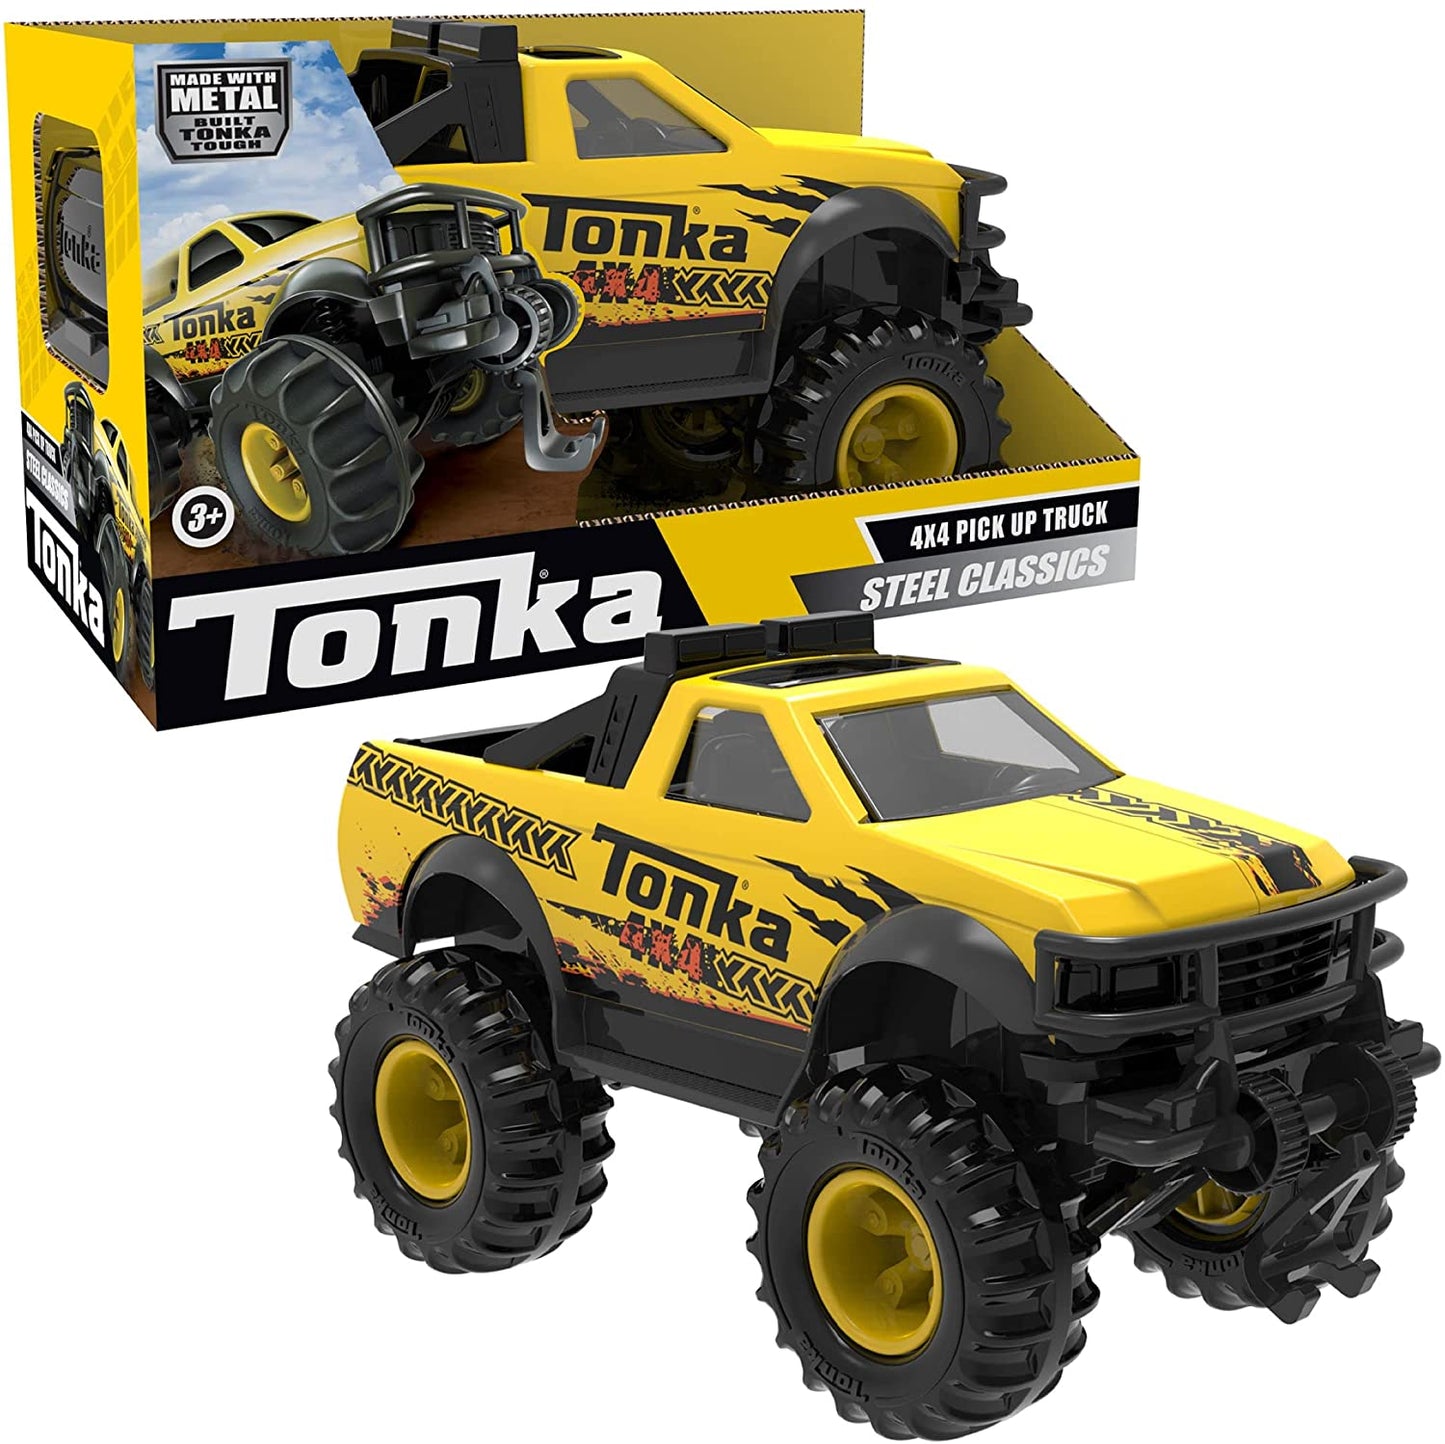 Tonka - Steel Classics 4X4 Pick up Truck